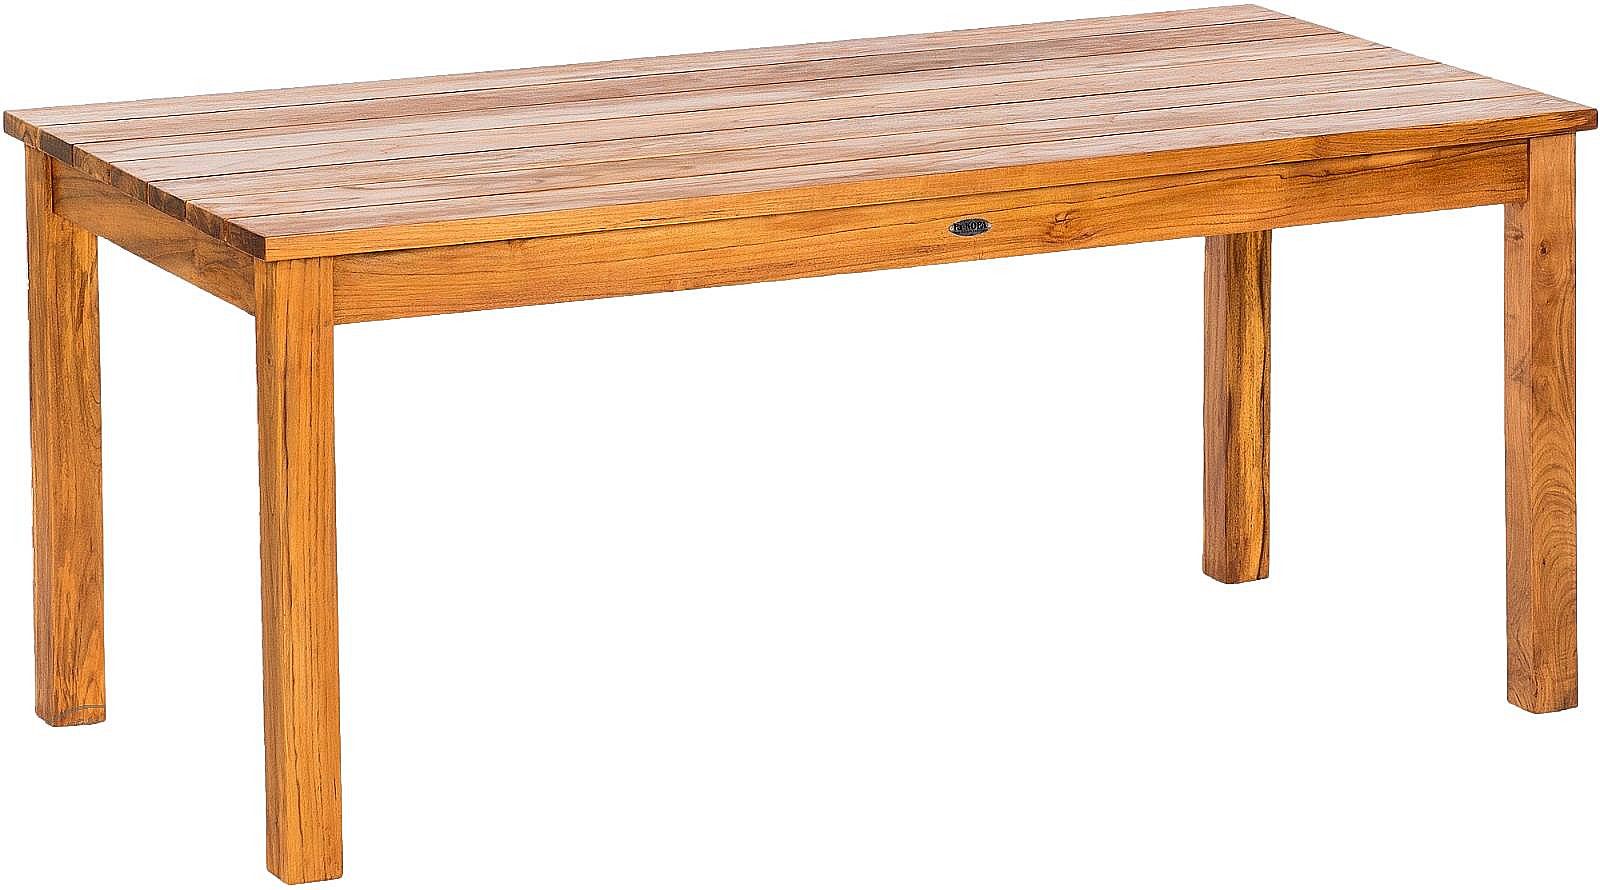 DEOKORK Záhradný teakový stôl GIOVANNI (rôzne dĺžky) 180x90 cm